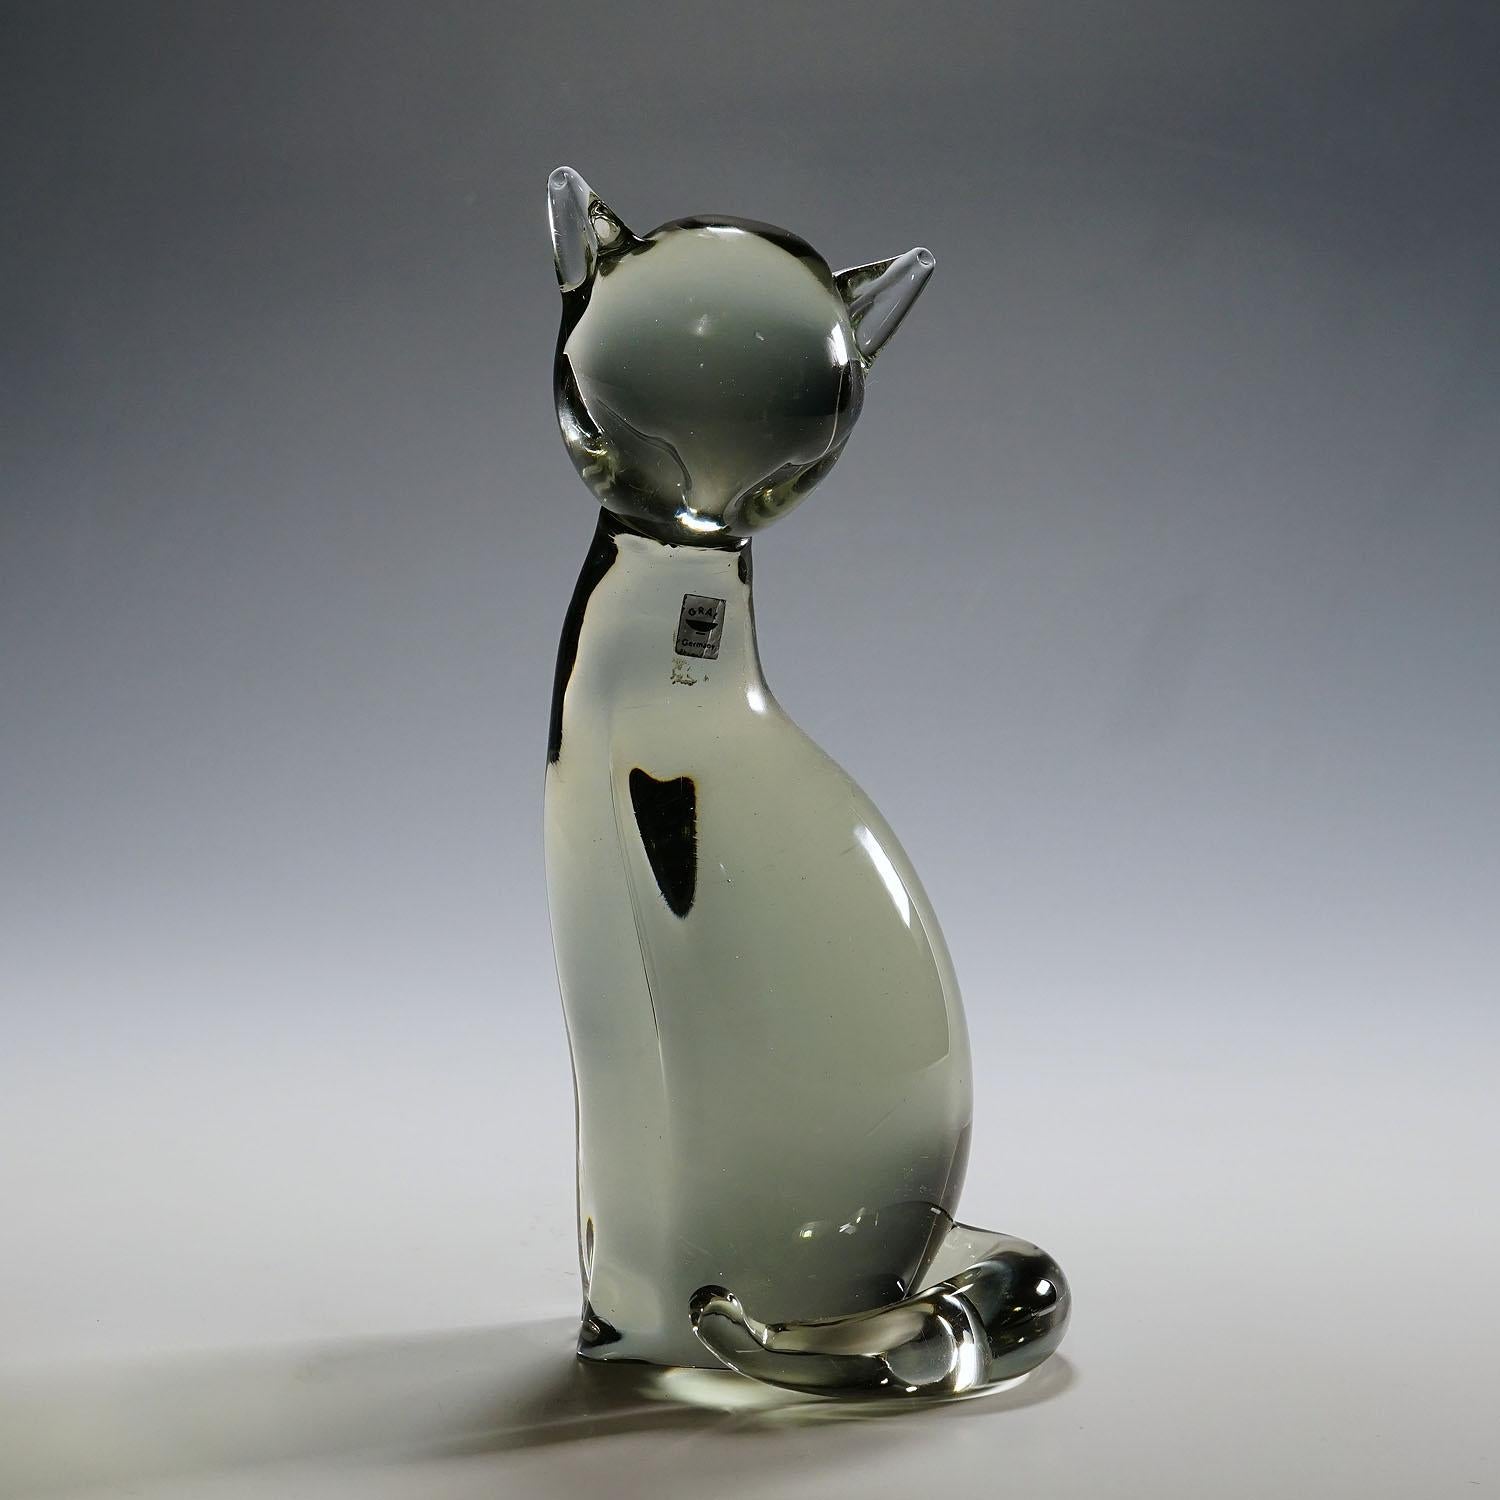 Sculpture d'un chat stylisé conçue par Livio Seguso, vers les années 1970.

Une jolie sculpture d'un chat stylisé en verre de cristal gris fumée. Fabriqué à la main dans la manufacture de verre Gral, en Allemagne. Il a été conçu par Livio Seguso